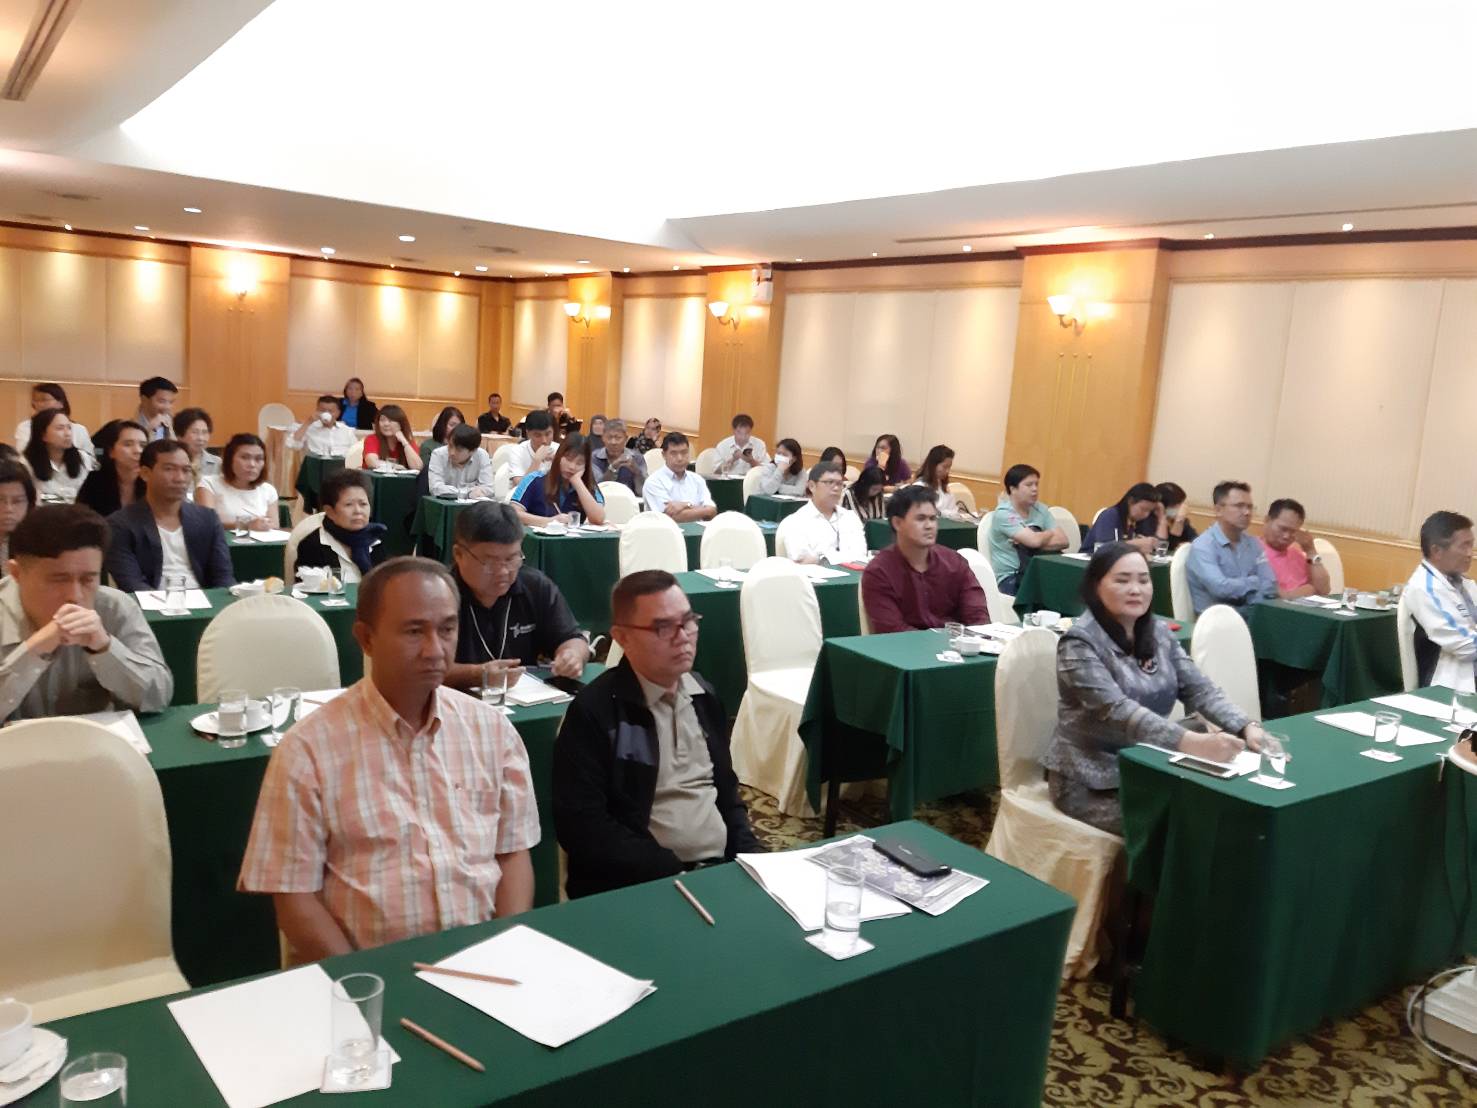 การประชุมใหญ่ประจำปี 2562 สมาคมการจัดหางานไทยไปต่างประเทศ